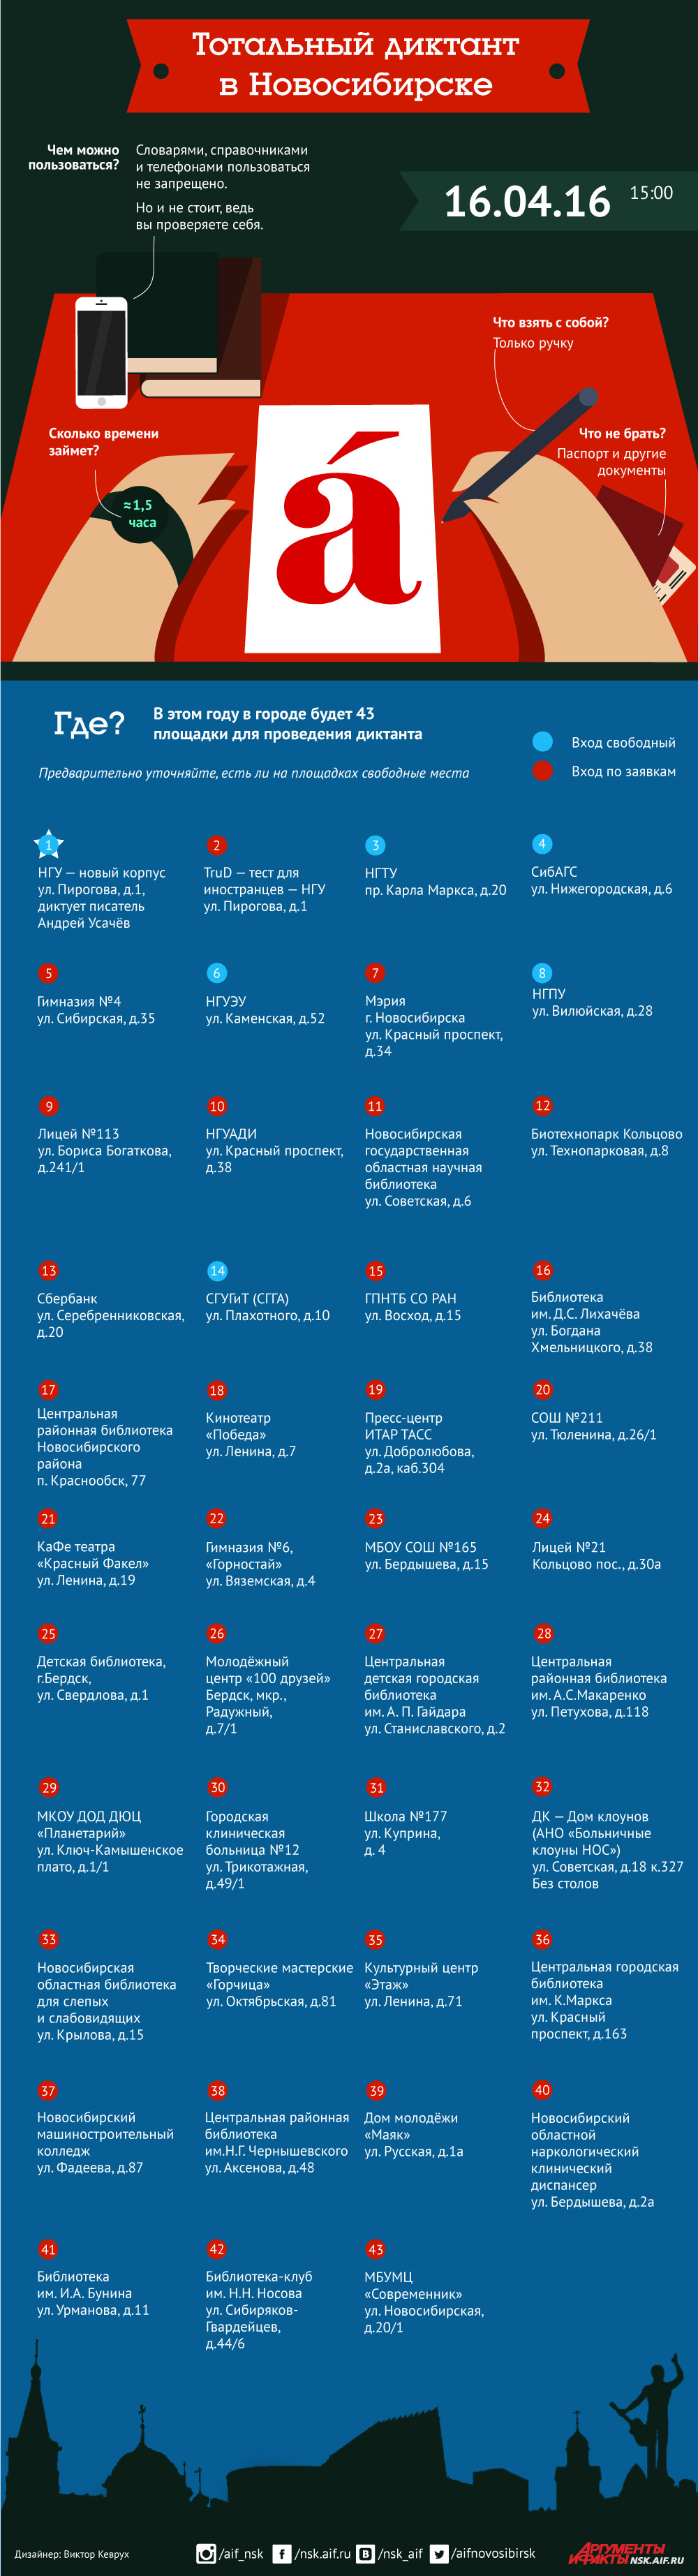 Тотальный диктант в Новосибирске-2016. Инфографика. Нажмите для увеличения.